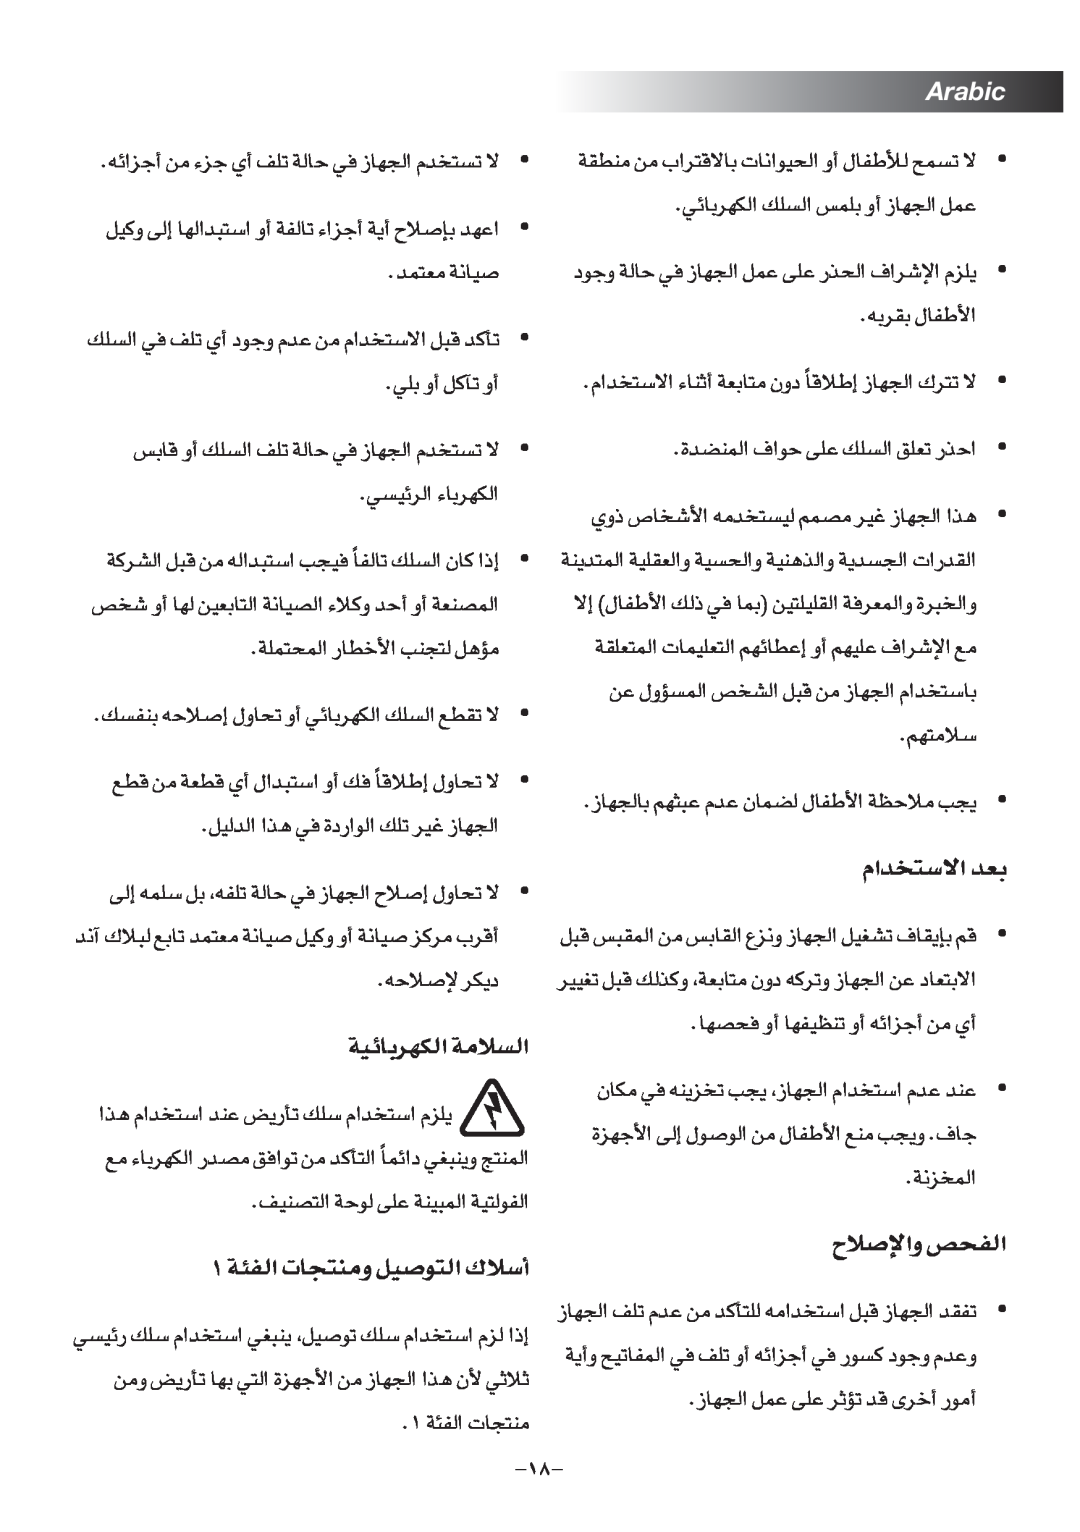 Black & Decker TS2080 manual Arabic, Ë«ùÅöÕ h H∞«, ªb«Â∑«ôß Fb, ËÍ- ªU’« ªb±t∑Oº∞ ±BLr ¨Od NU“∞π« c«≥, W≤Lªe∞«, Lb∑±F W≤ÅOU 